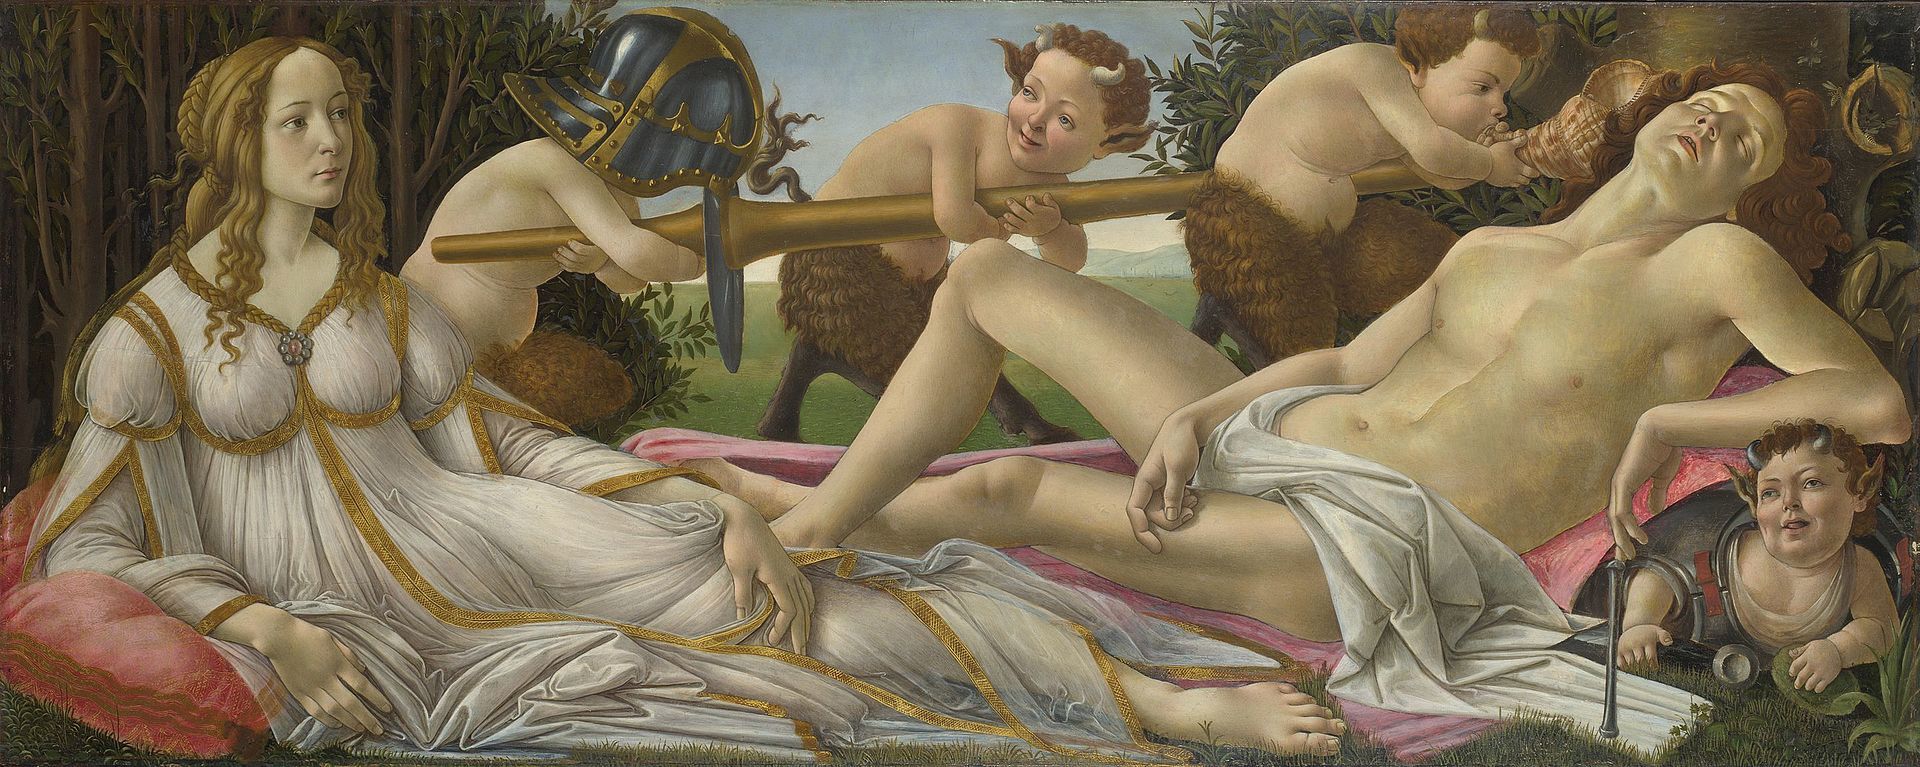 Venus y Marte representados por Botticelli,